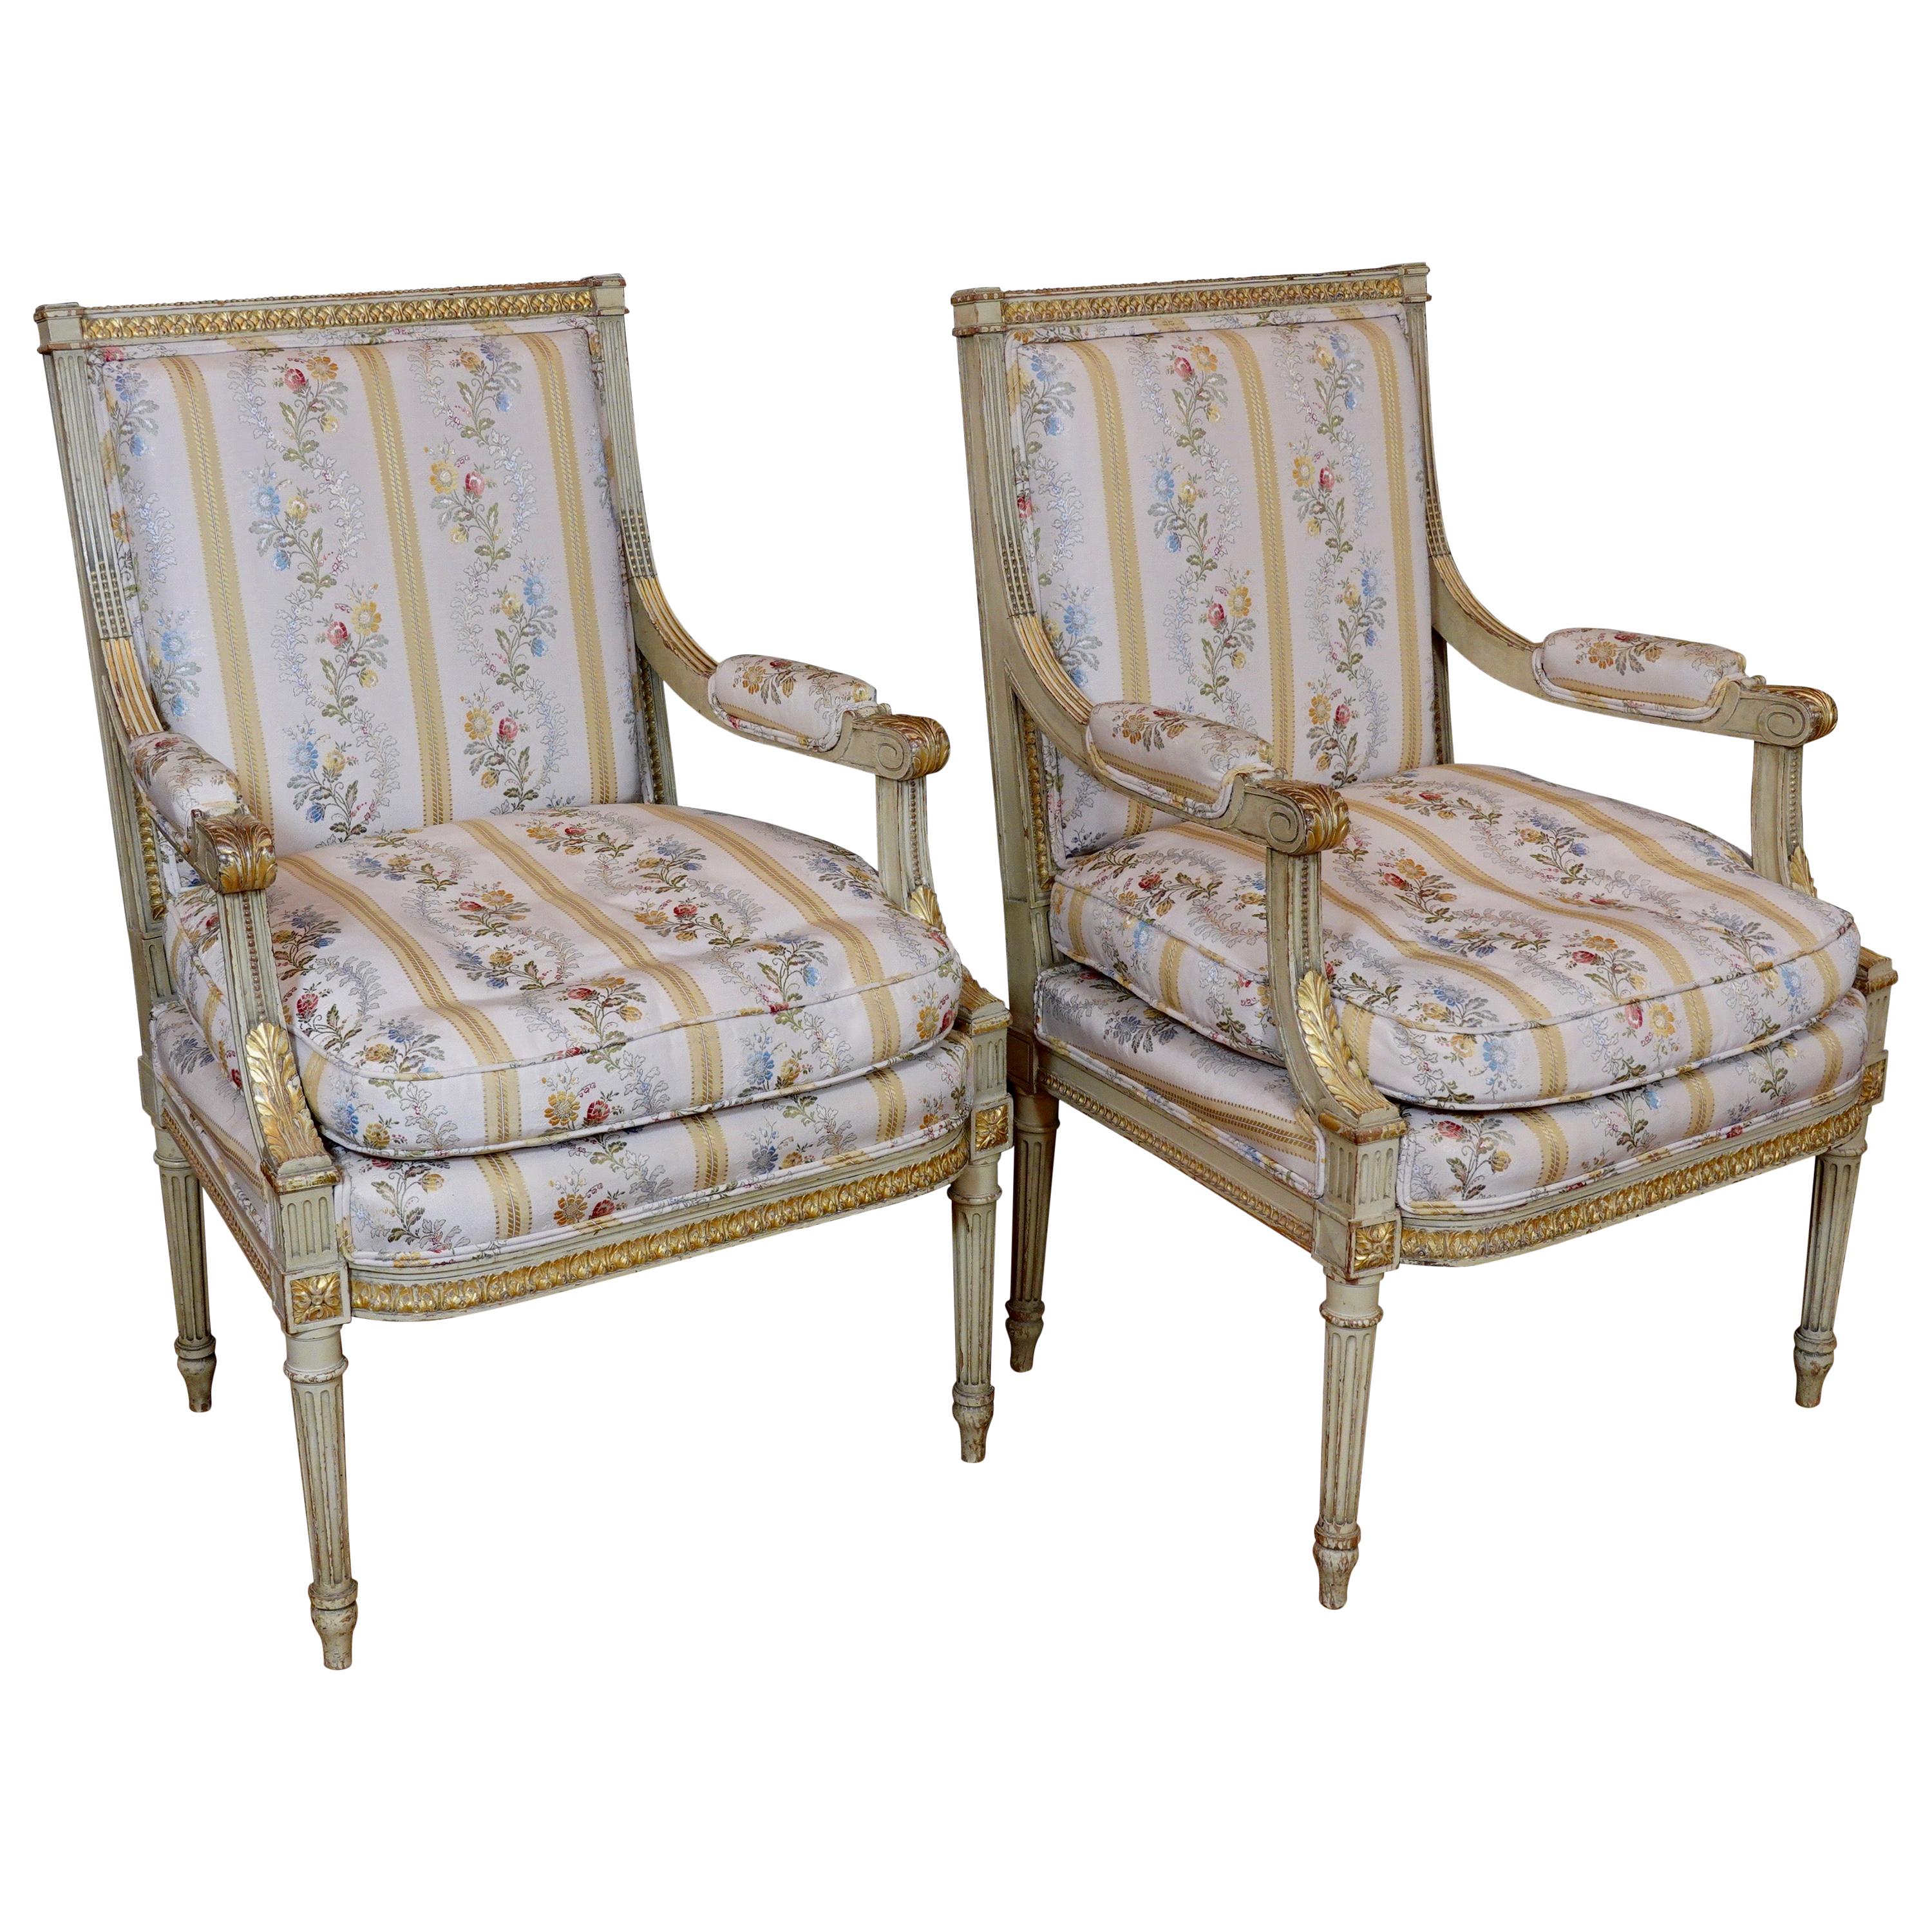 Ein Paar Fauteuils oder Sessel im Louis XVI-Stil mit Lampas-Stoff aus Seide